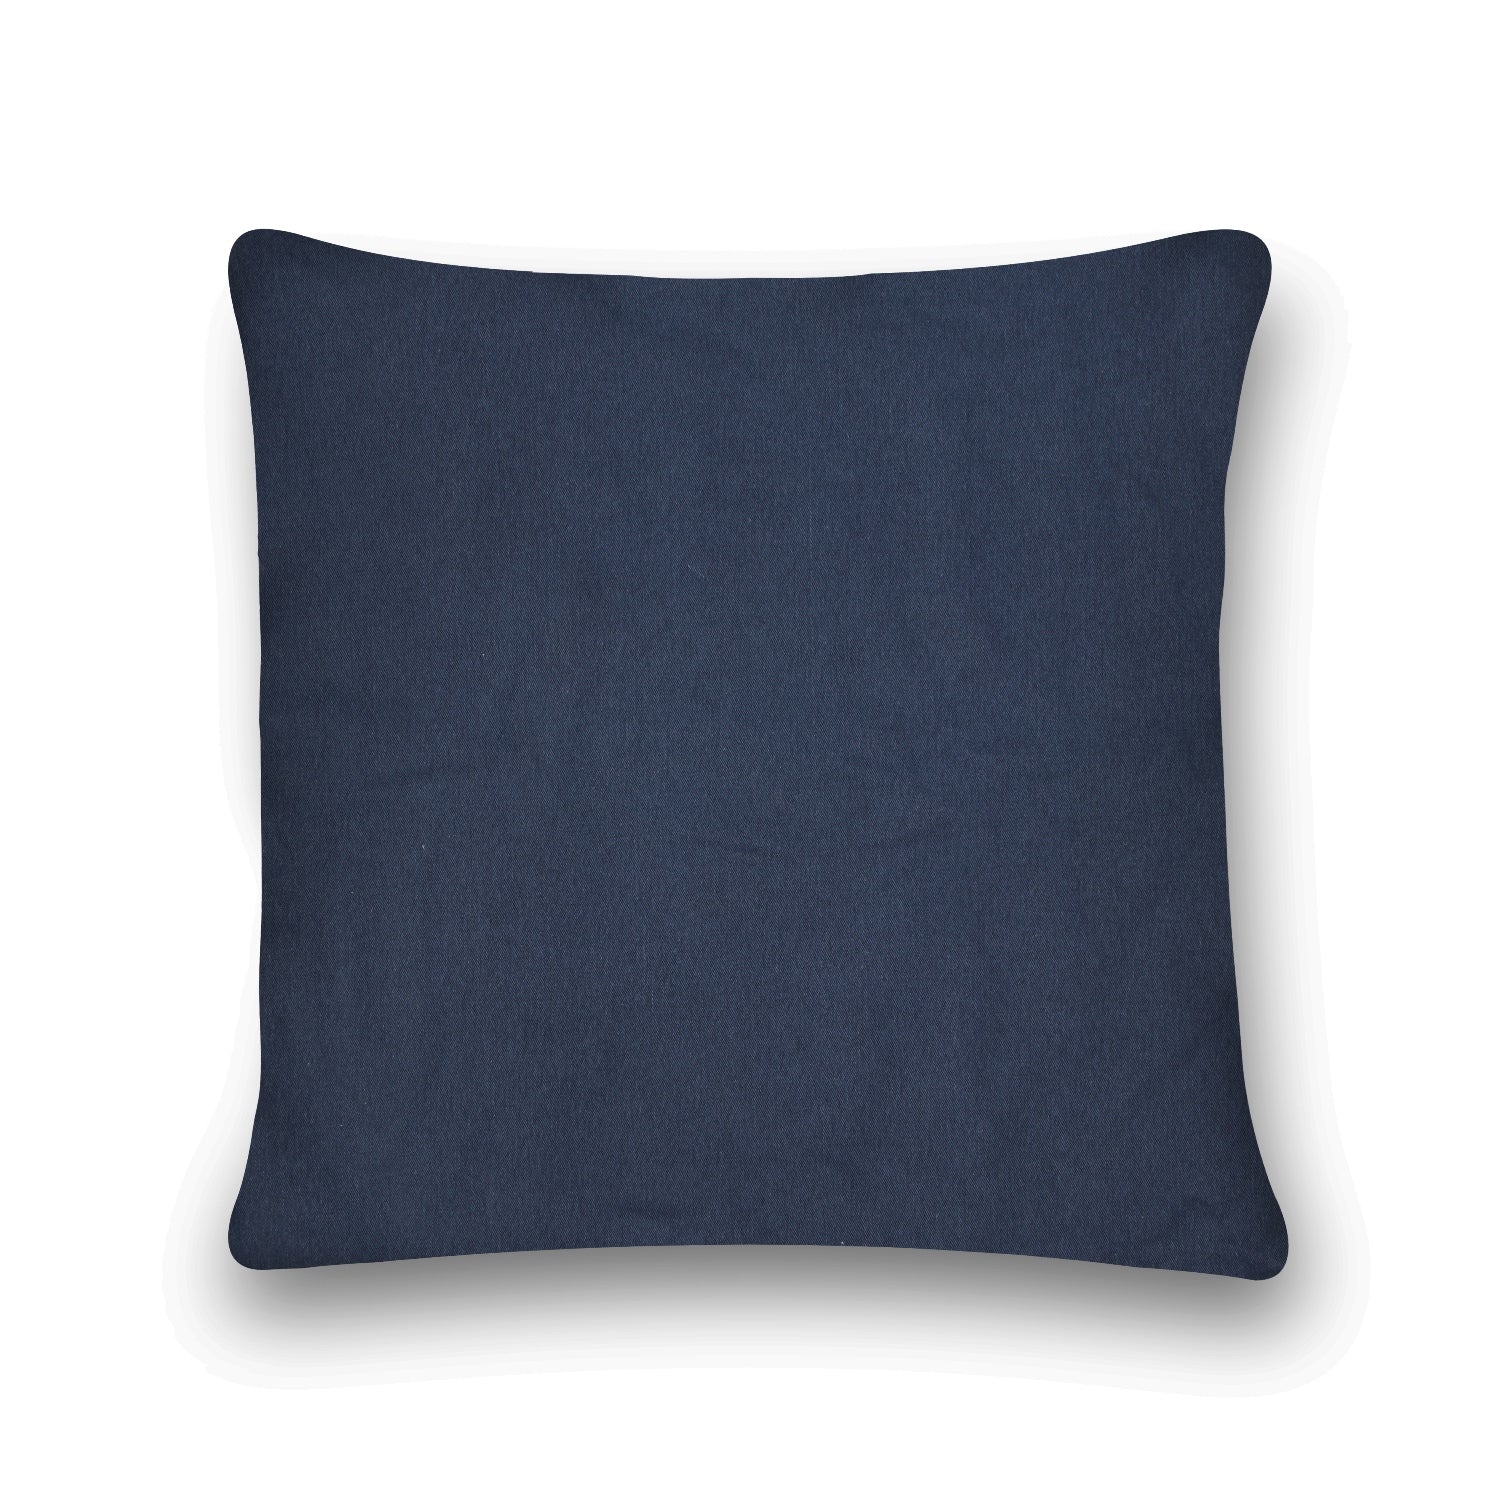 'Geometric Zen' 100% Cotton Velvet Cushion Cover